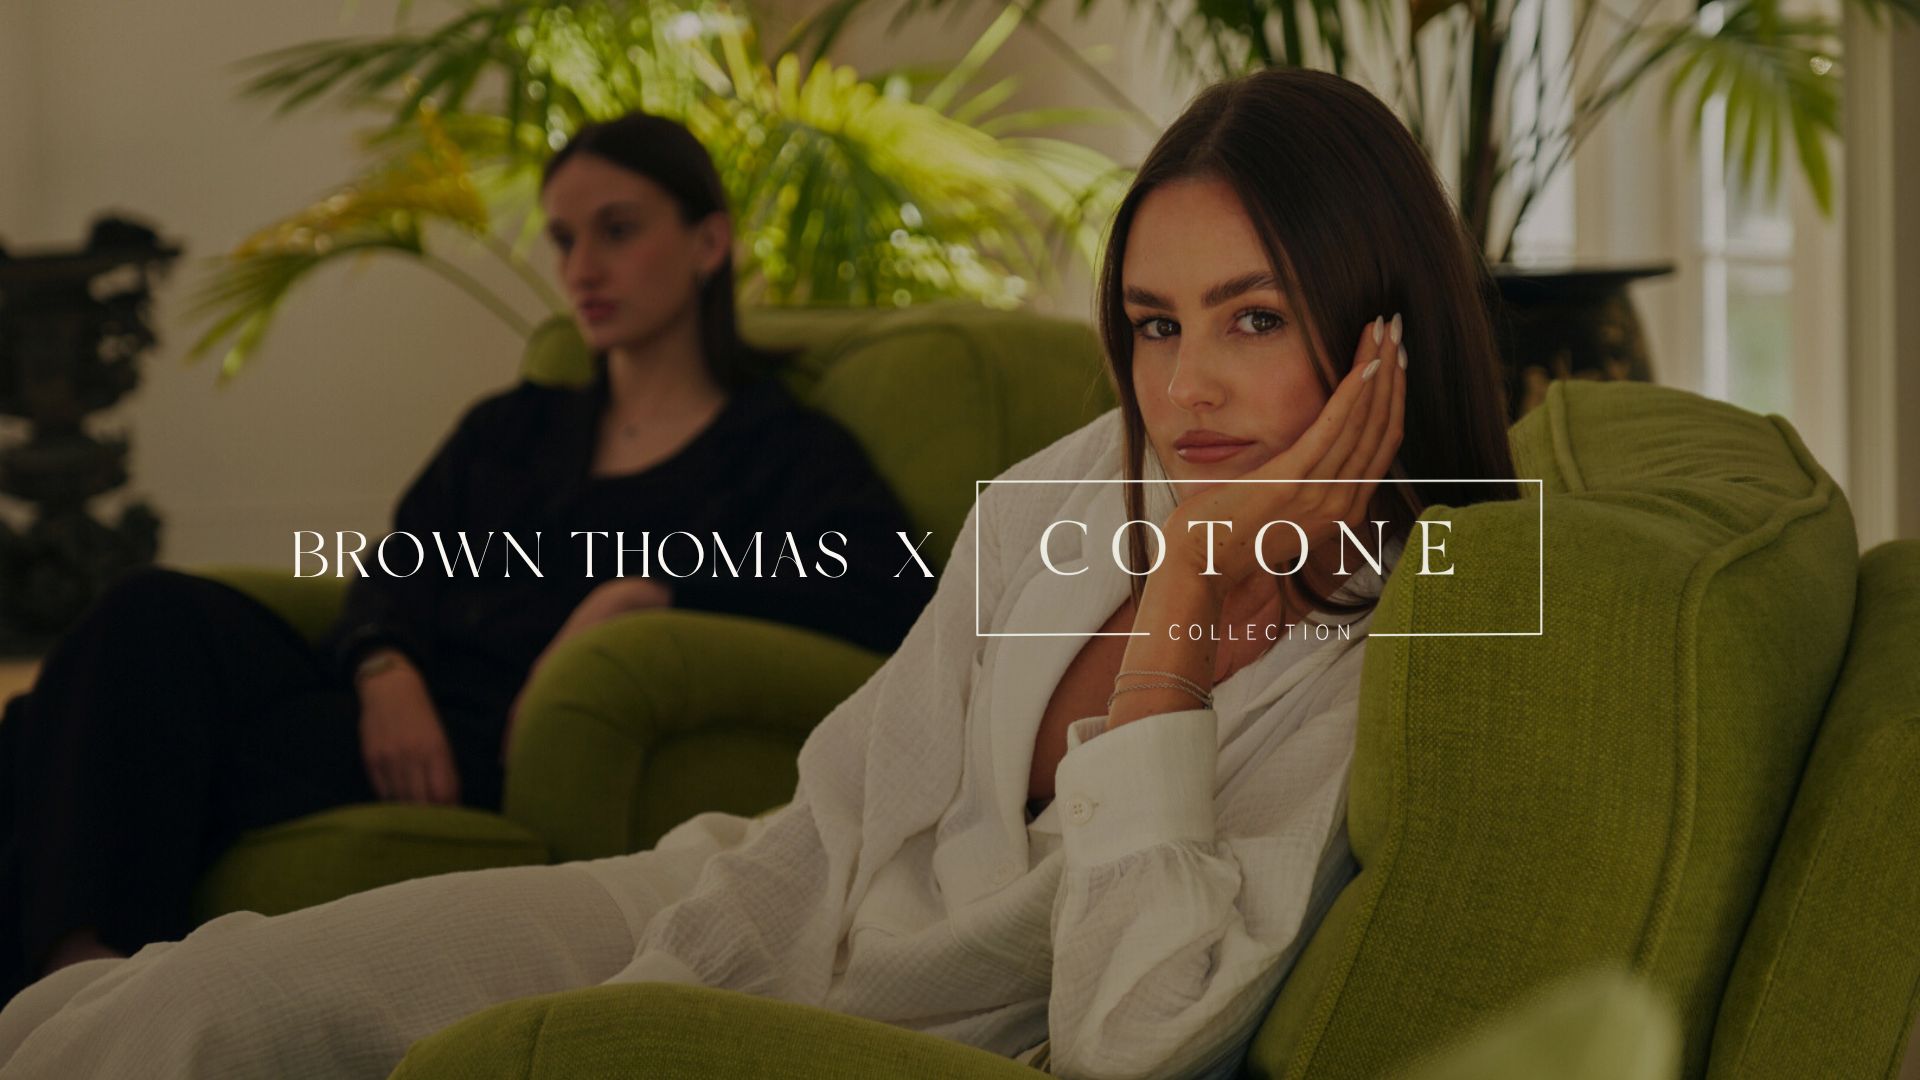 Brown Thomas x Cotone Collection